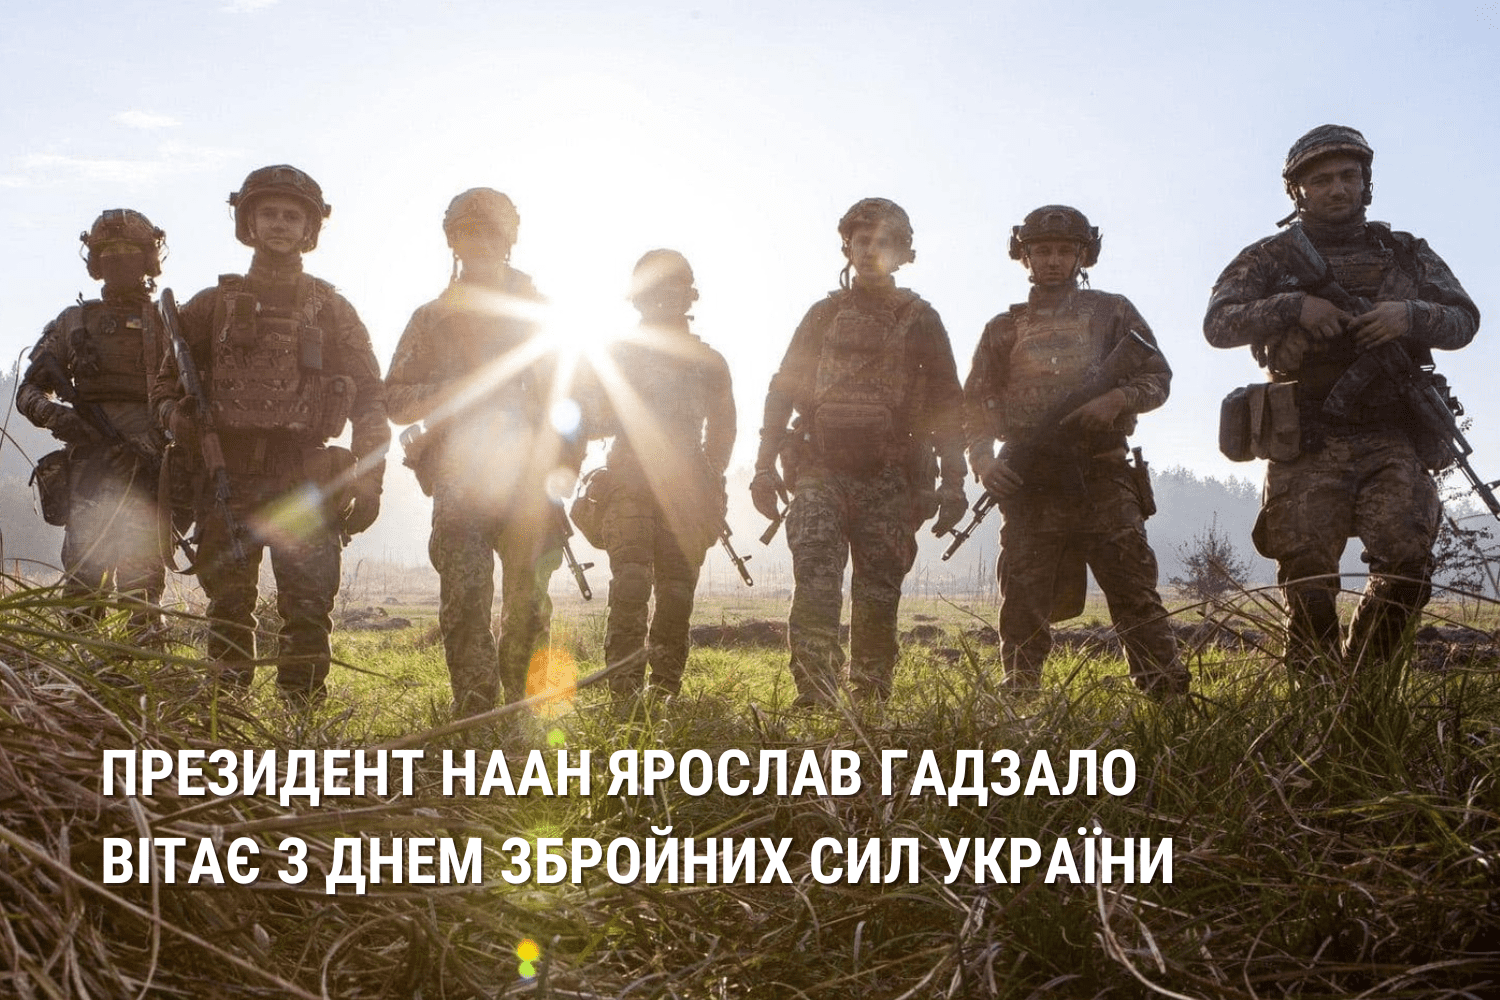 Президент НААН Ярослав Гадзало вітає з Днем Збройних Сил України